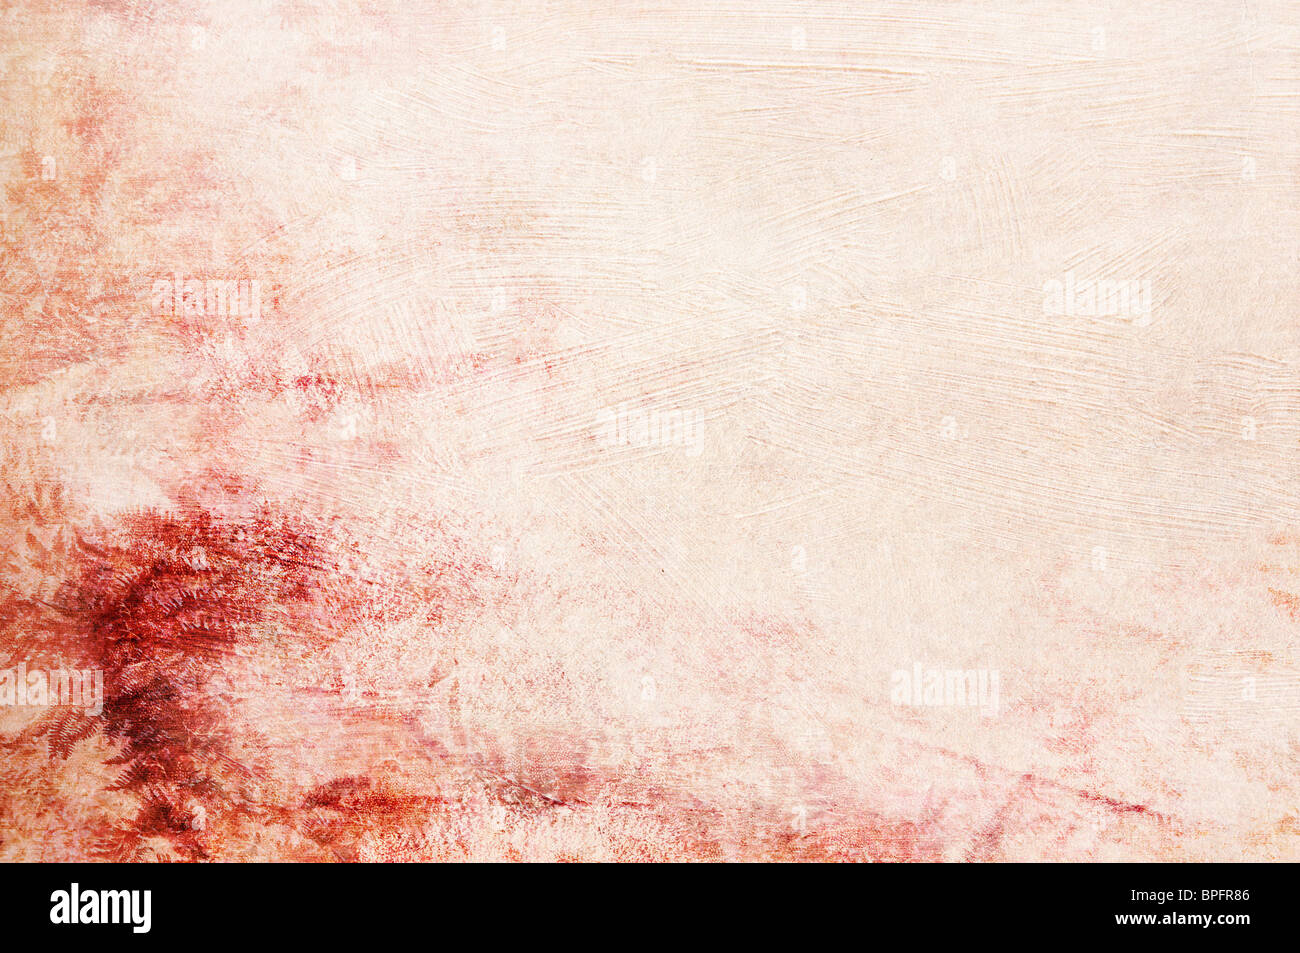 Testurizzato rosa rosso sfondo beige con spazio per testo o immagine - scrapbooking Foto Stock